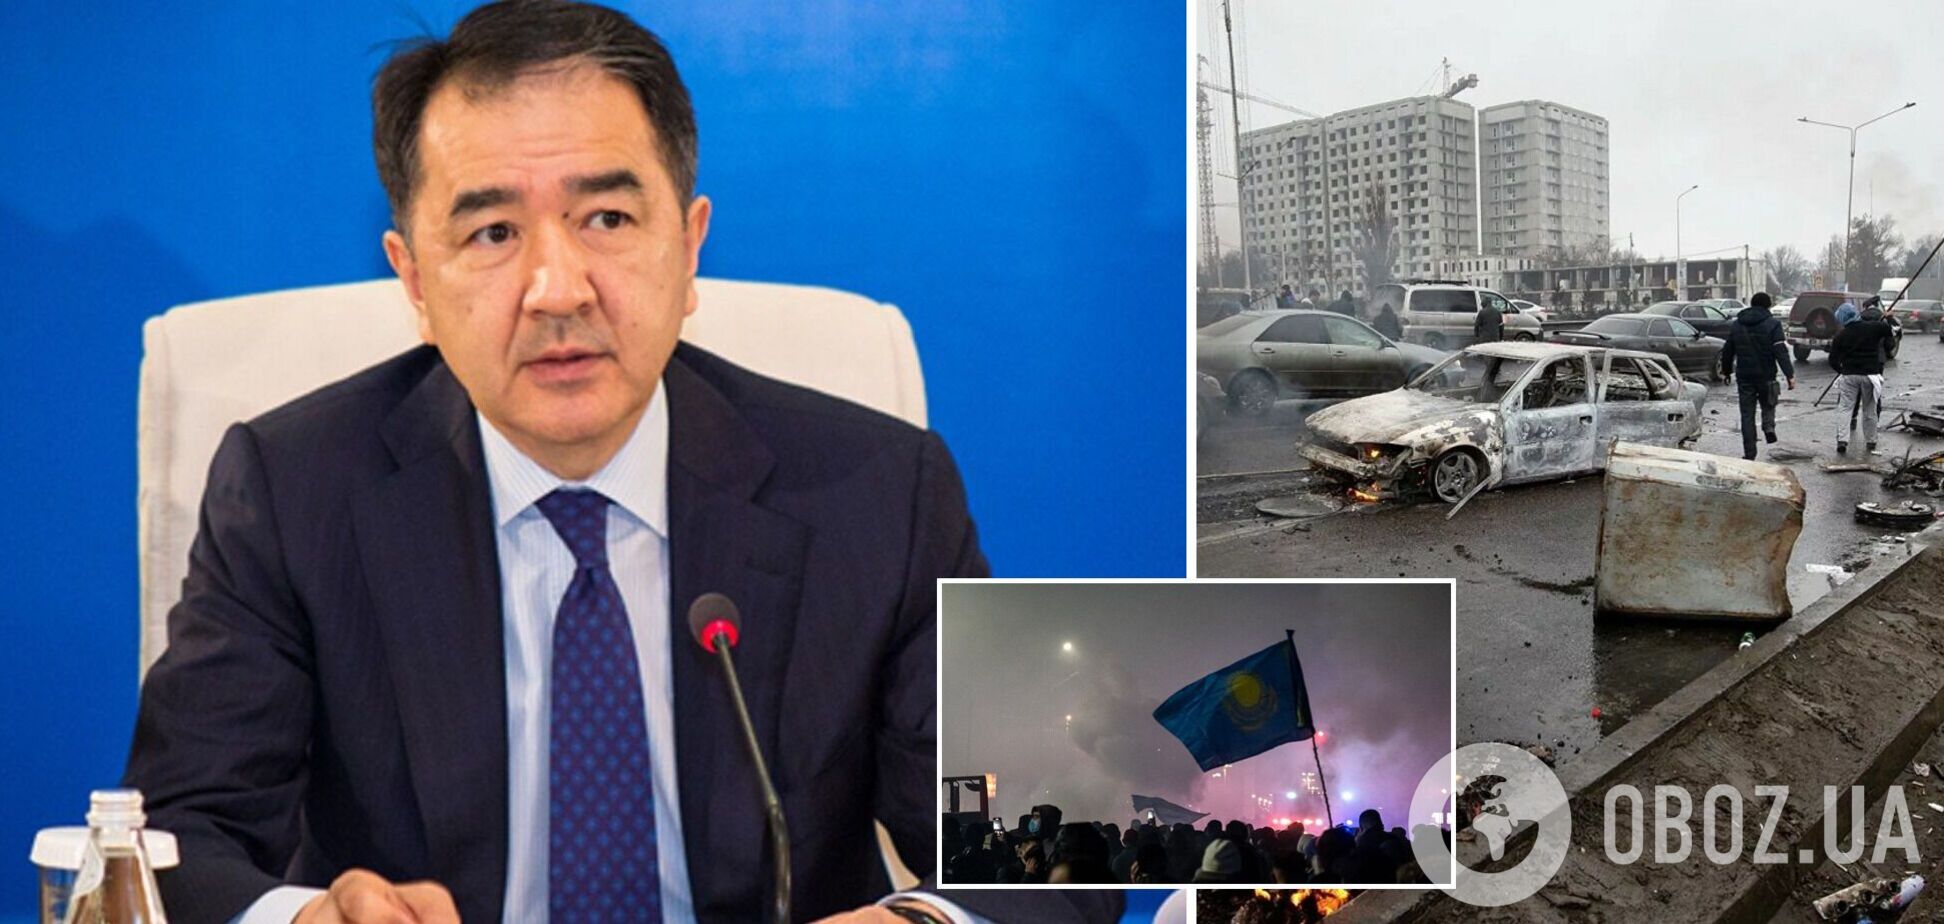 'Обстреливали из кустов': мэр Алматы заявил, что едва не погиб во время протестов. Видео